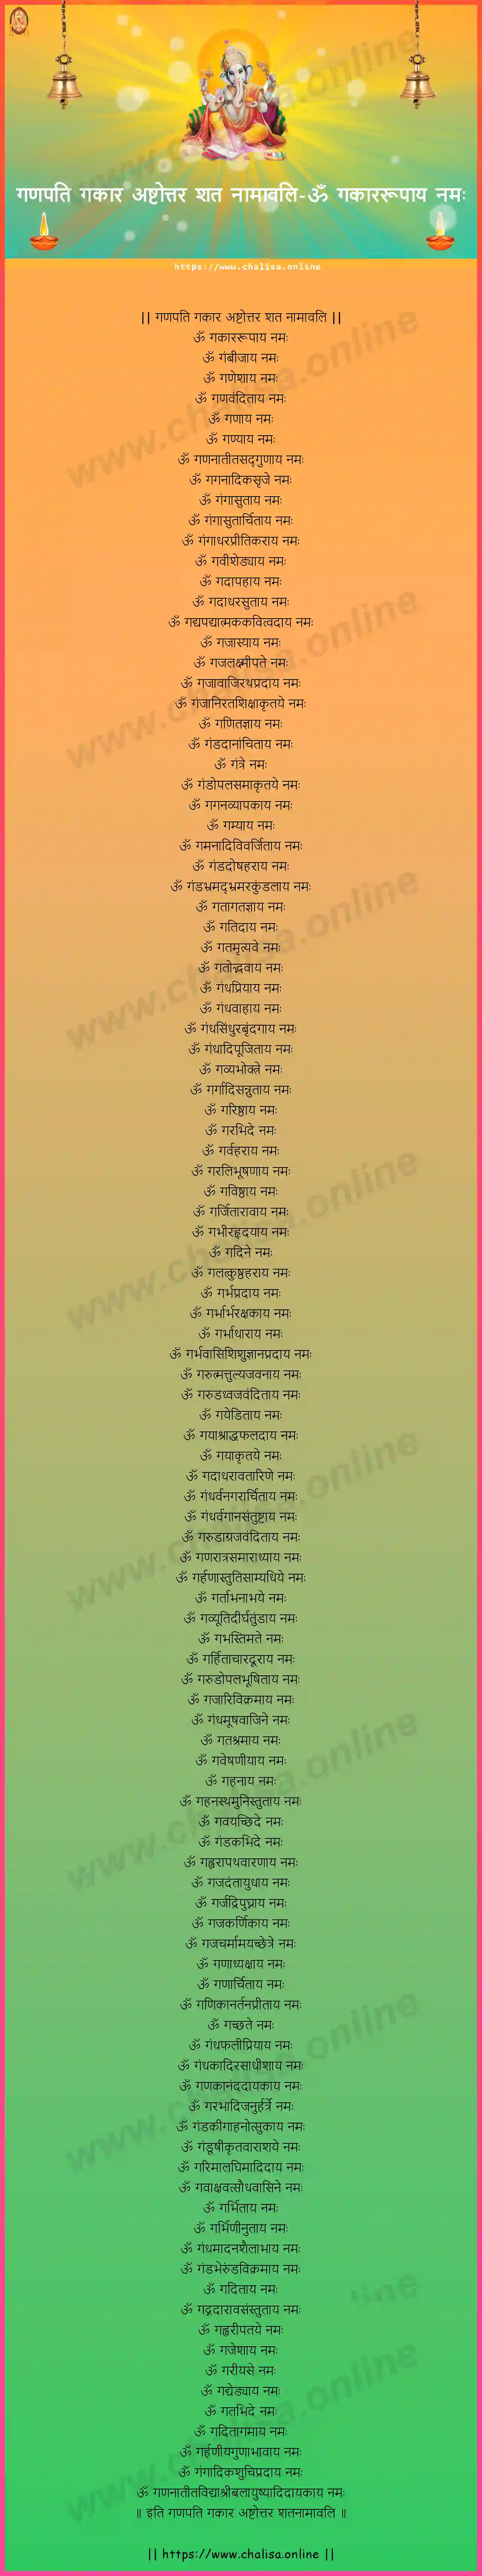 om-gakararupaya-ganapati-gakara-ashtottara-sata-namavali-konkani-konkani-lyrics-download